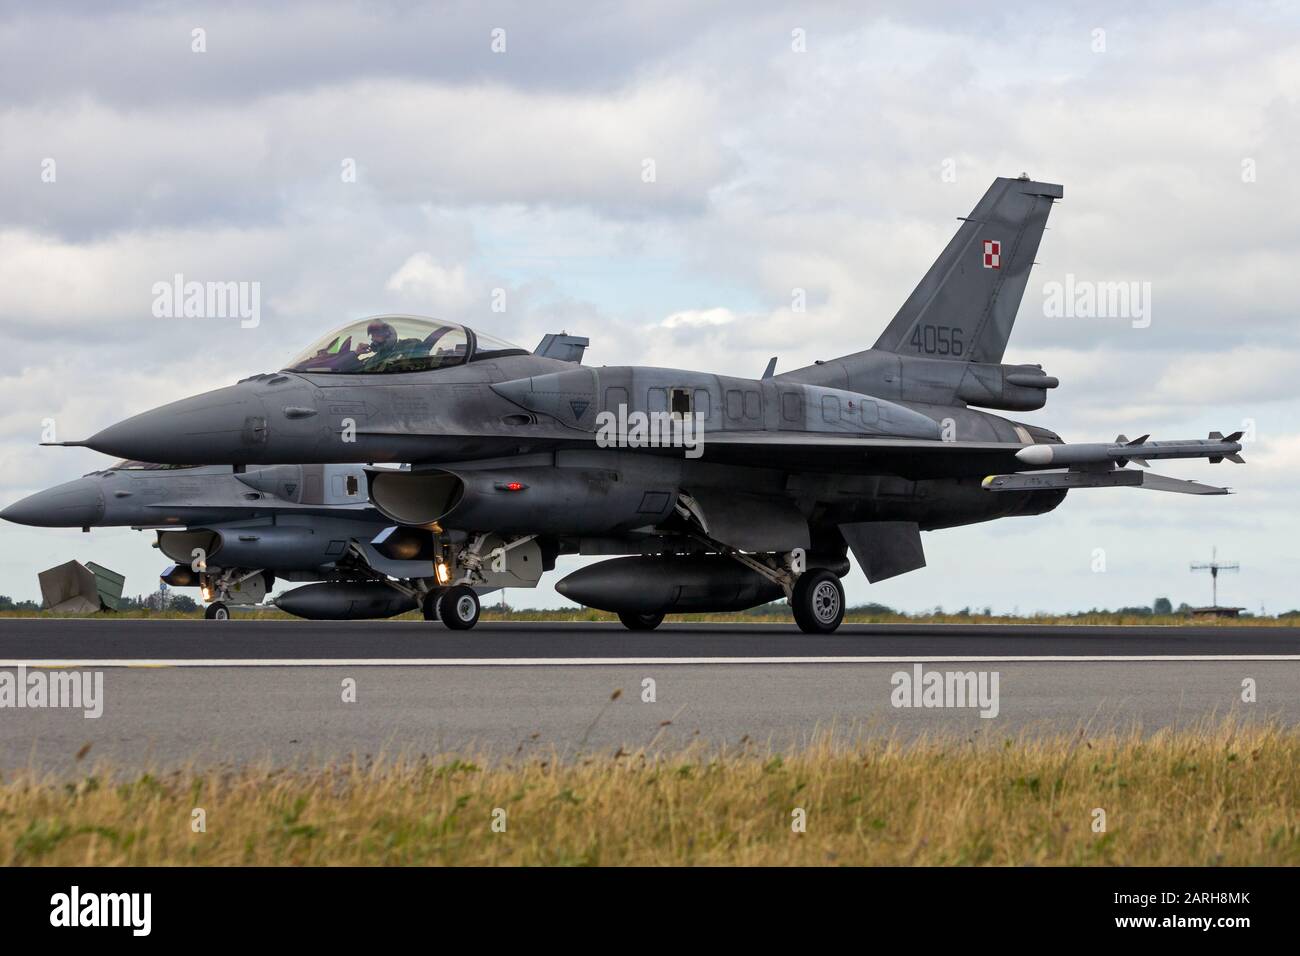 Schleswig-JAGEL, ALLEMAGNE - 23 JUIN 2014 : les avions de chasse F-16 de la Force aérienne polonaise sur la piste lors De La Rencontre du tigre de l'OTAN à la base aérienne de Schleswig-Jagel. Banque D'Images